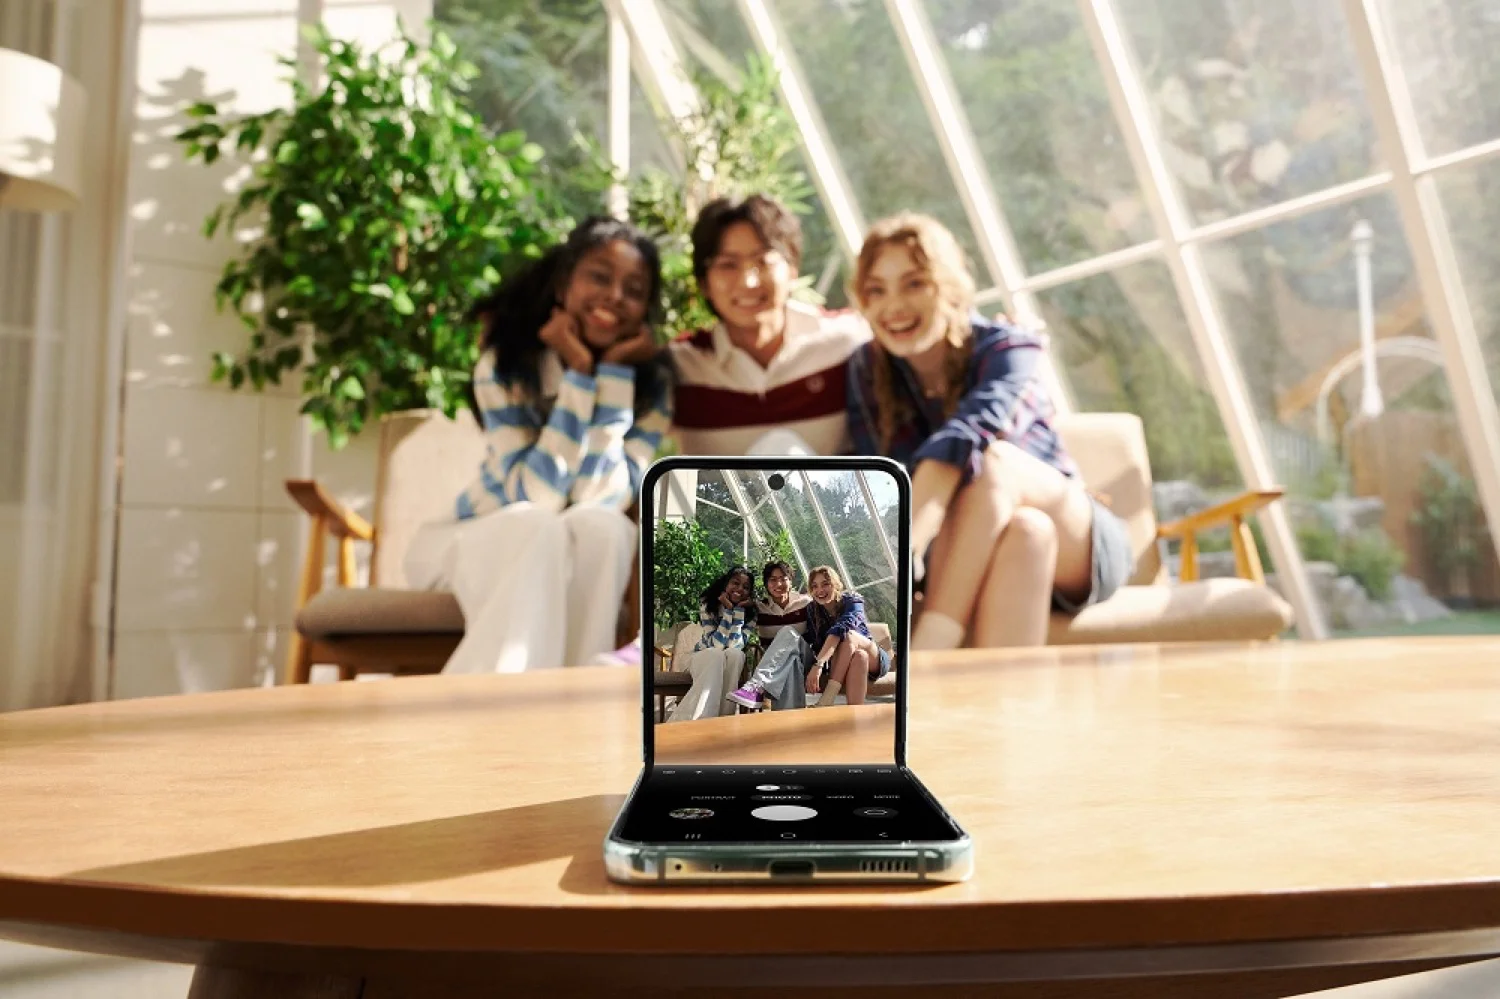 Captura selfies icónicas con el nuevo Galaxy Z Flip5